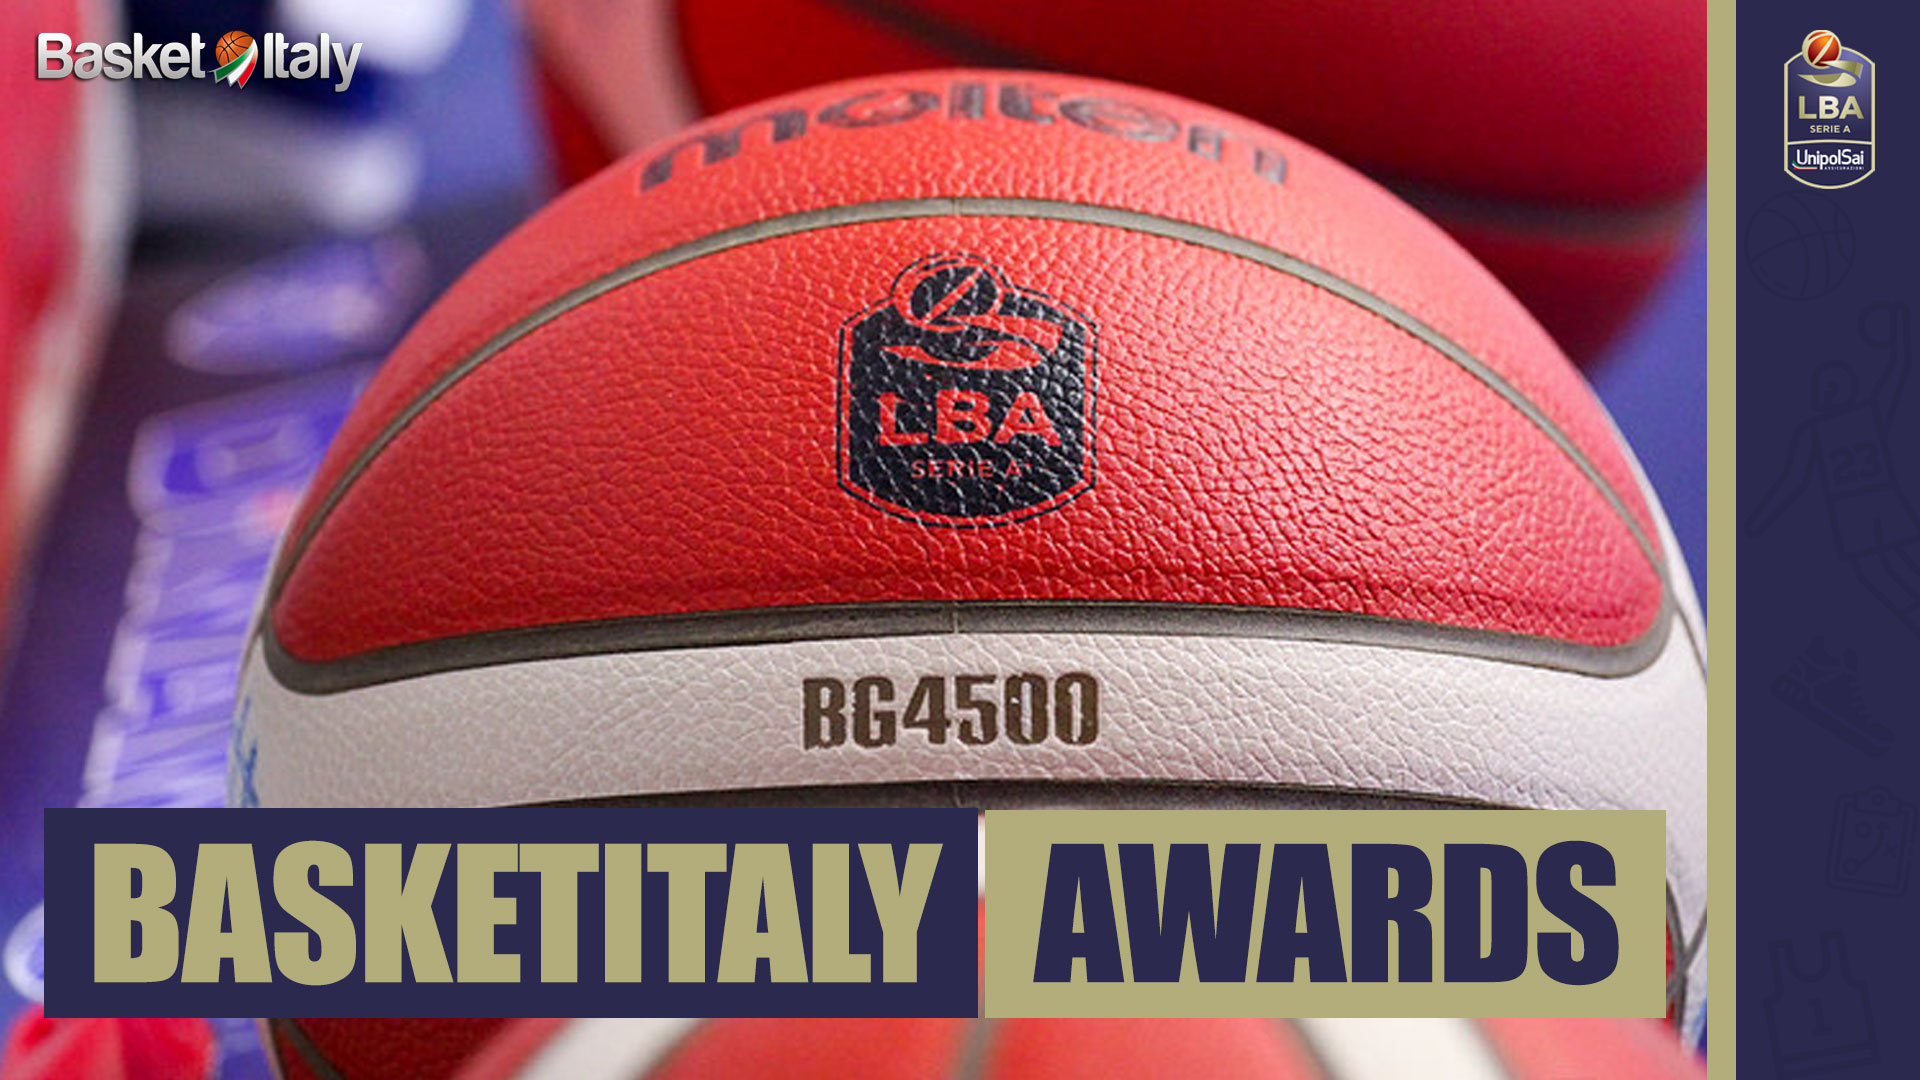 LBA – Basketitaly Awards